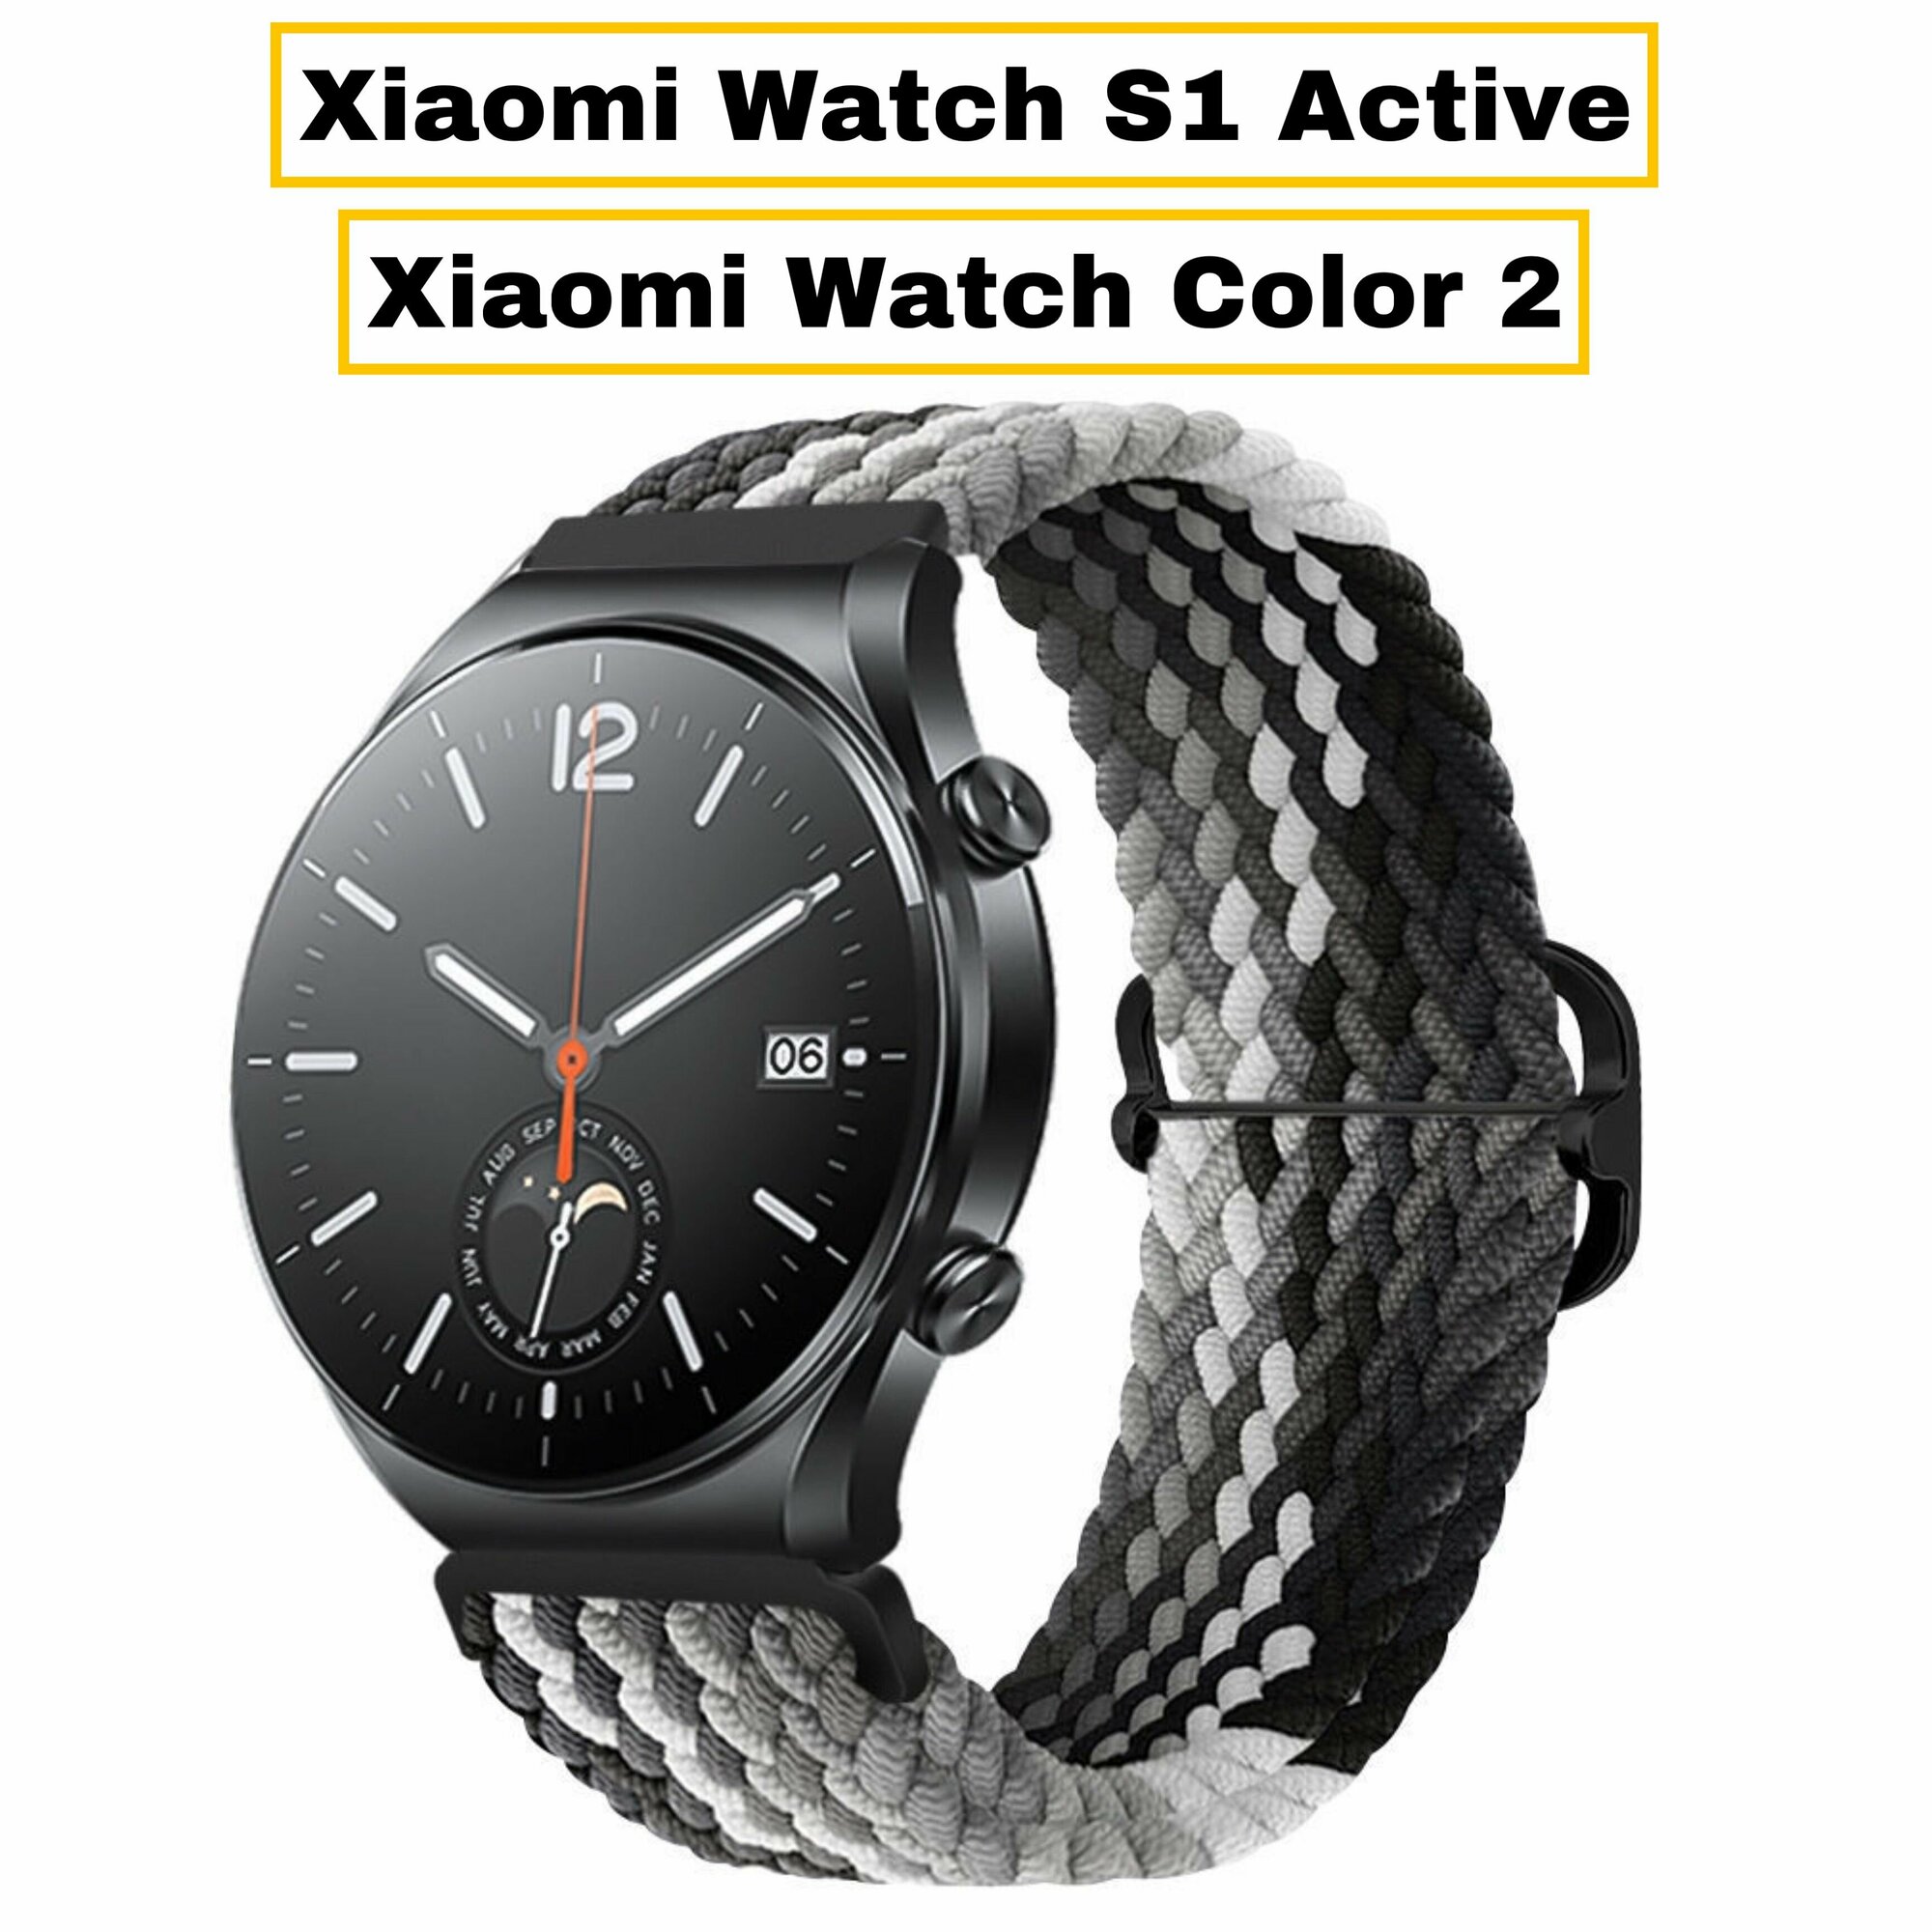 Сменный, тканевый ремешок-браслет Garmoni Text для умных смарт-часов Xiaomi Watch S1/ S1 Active/ Color 2 из прочного плетения и плотного качественного нейлона спортивный дизайн черно-серый